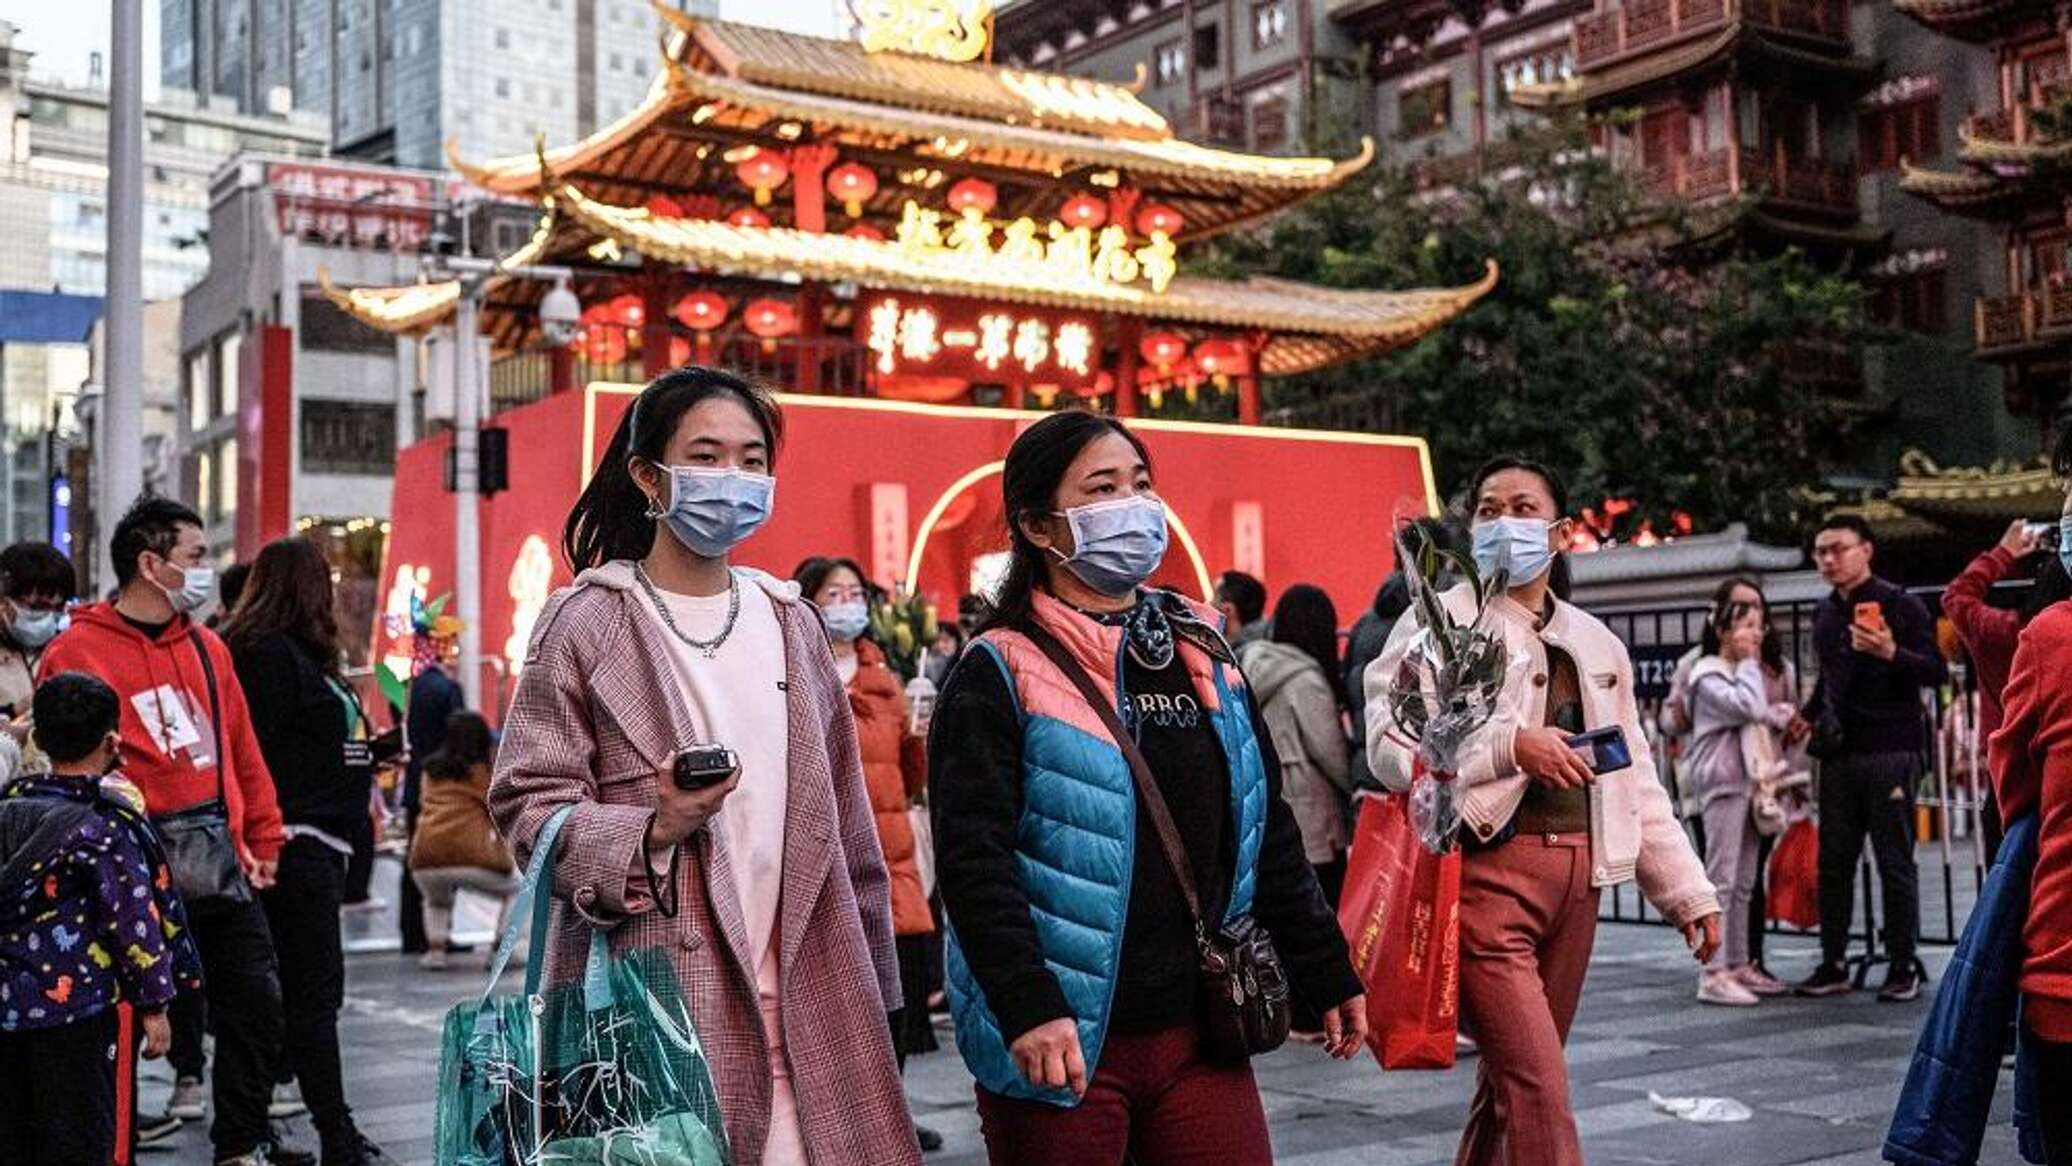 السفر بدون تأشيرة ينعش حركة السياحة الصينية